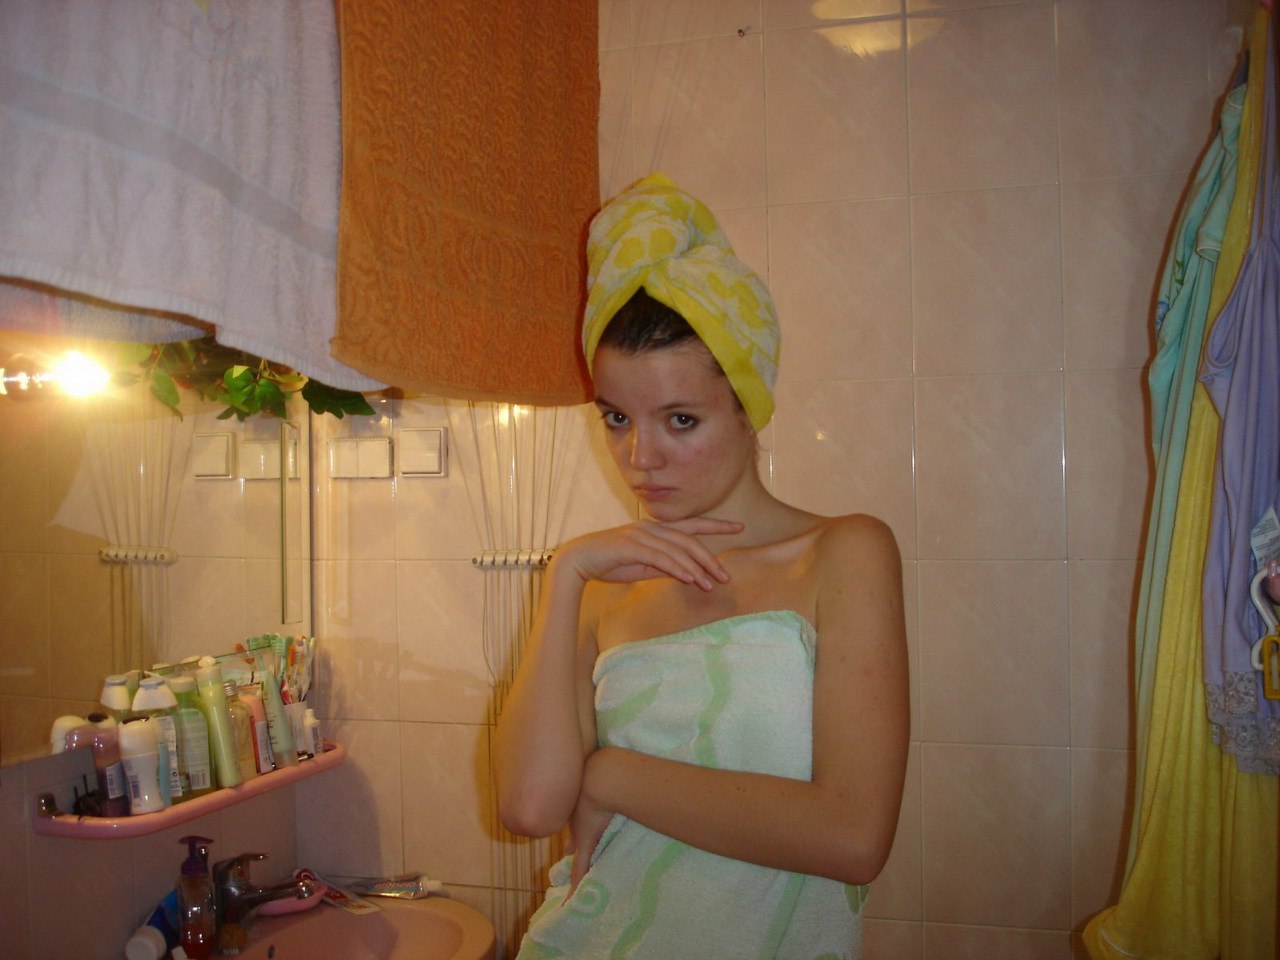 20 летняя нимфа голышом позирует в ванной комнате 12 фотография